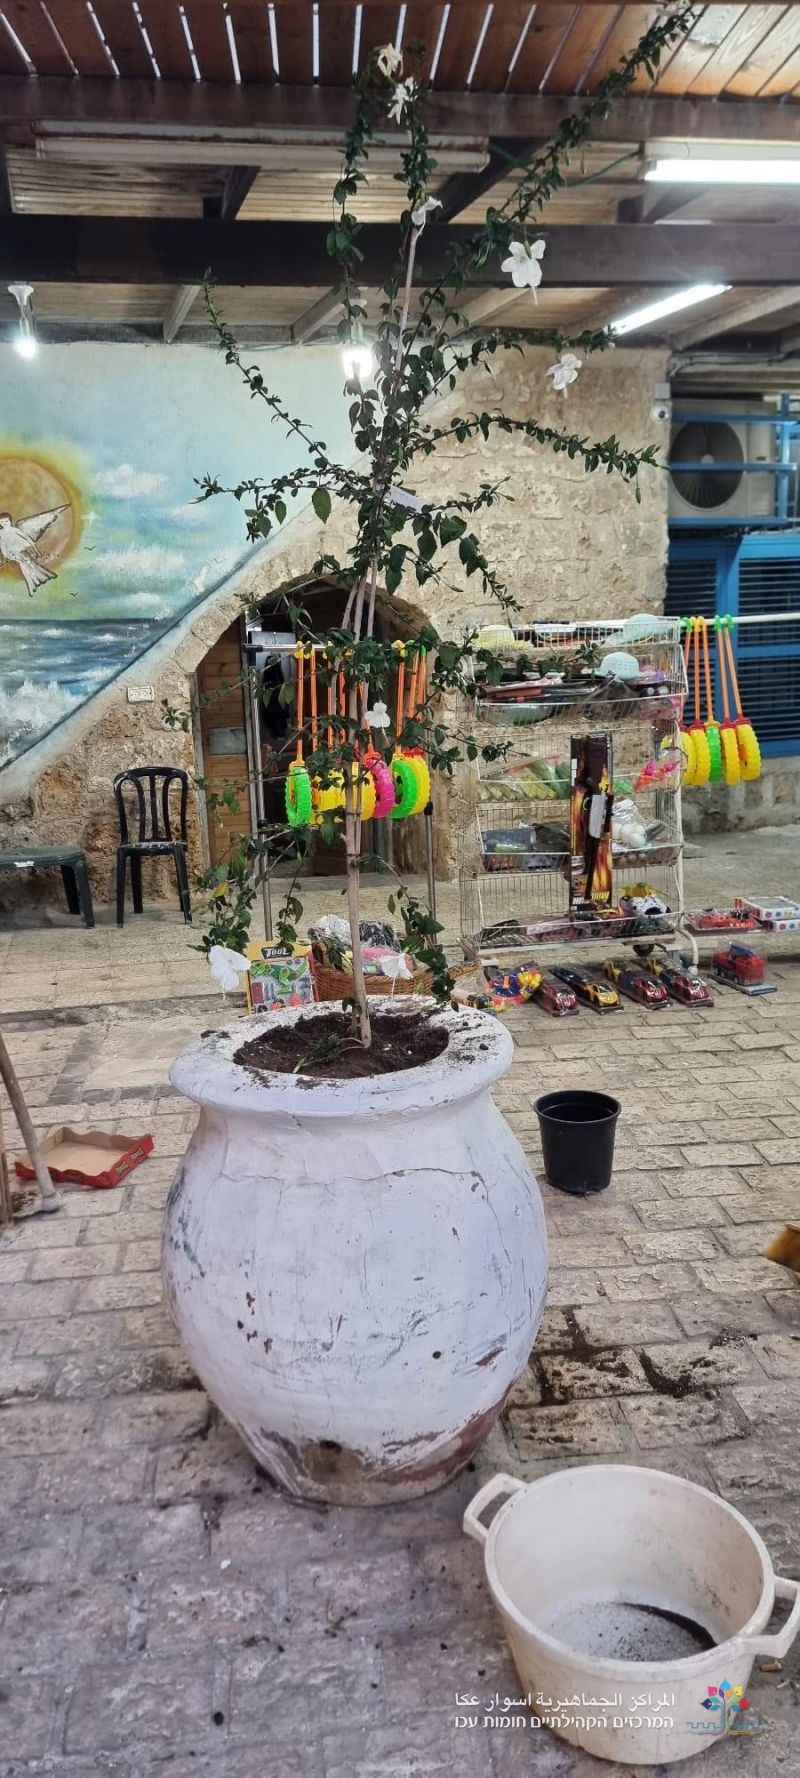 مشروع "حارتي بيتي" يزين حي الفاخورة  بالورود والاشجار بمرافقة سيارة الزهور.